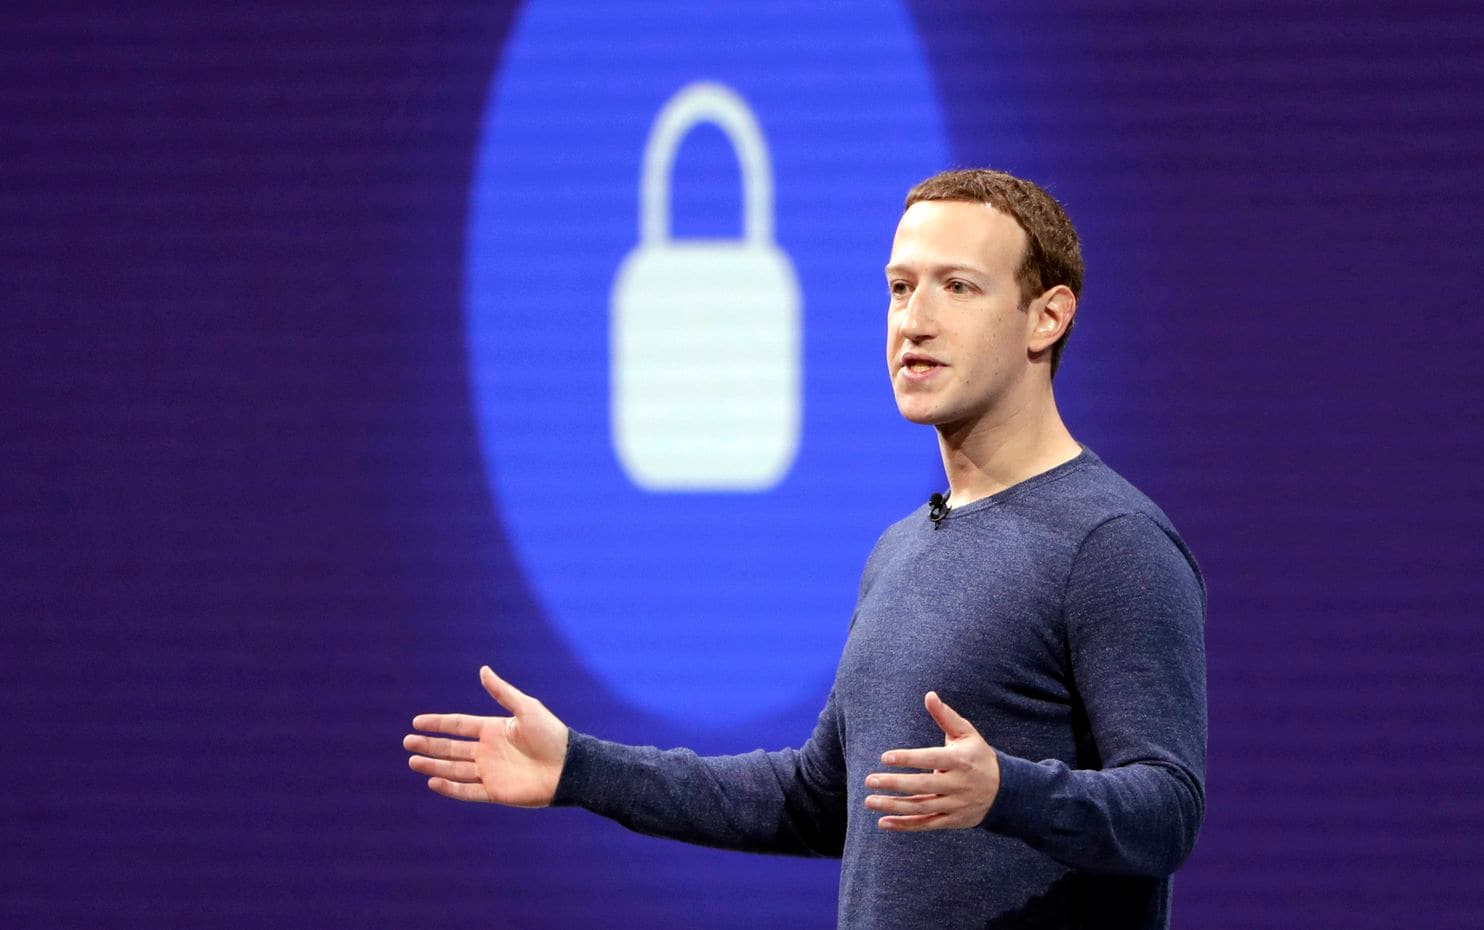 Mark Zuckerber, CEO do Facebook, está cada vez mais pressionado pela comunidade global a adotar medidas rígidas contra as fake news e propaganda política que siga o mesmo caminho